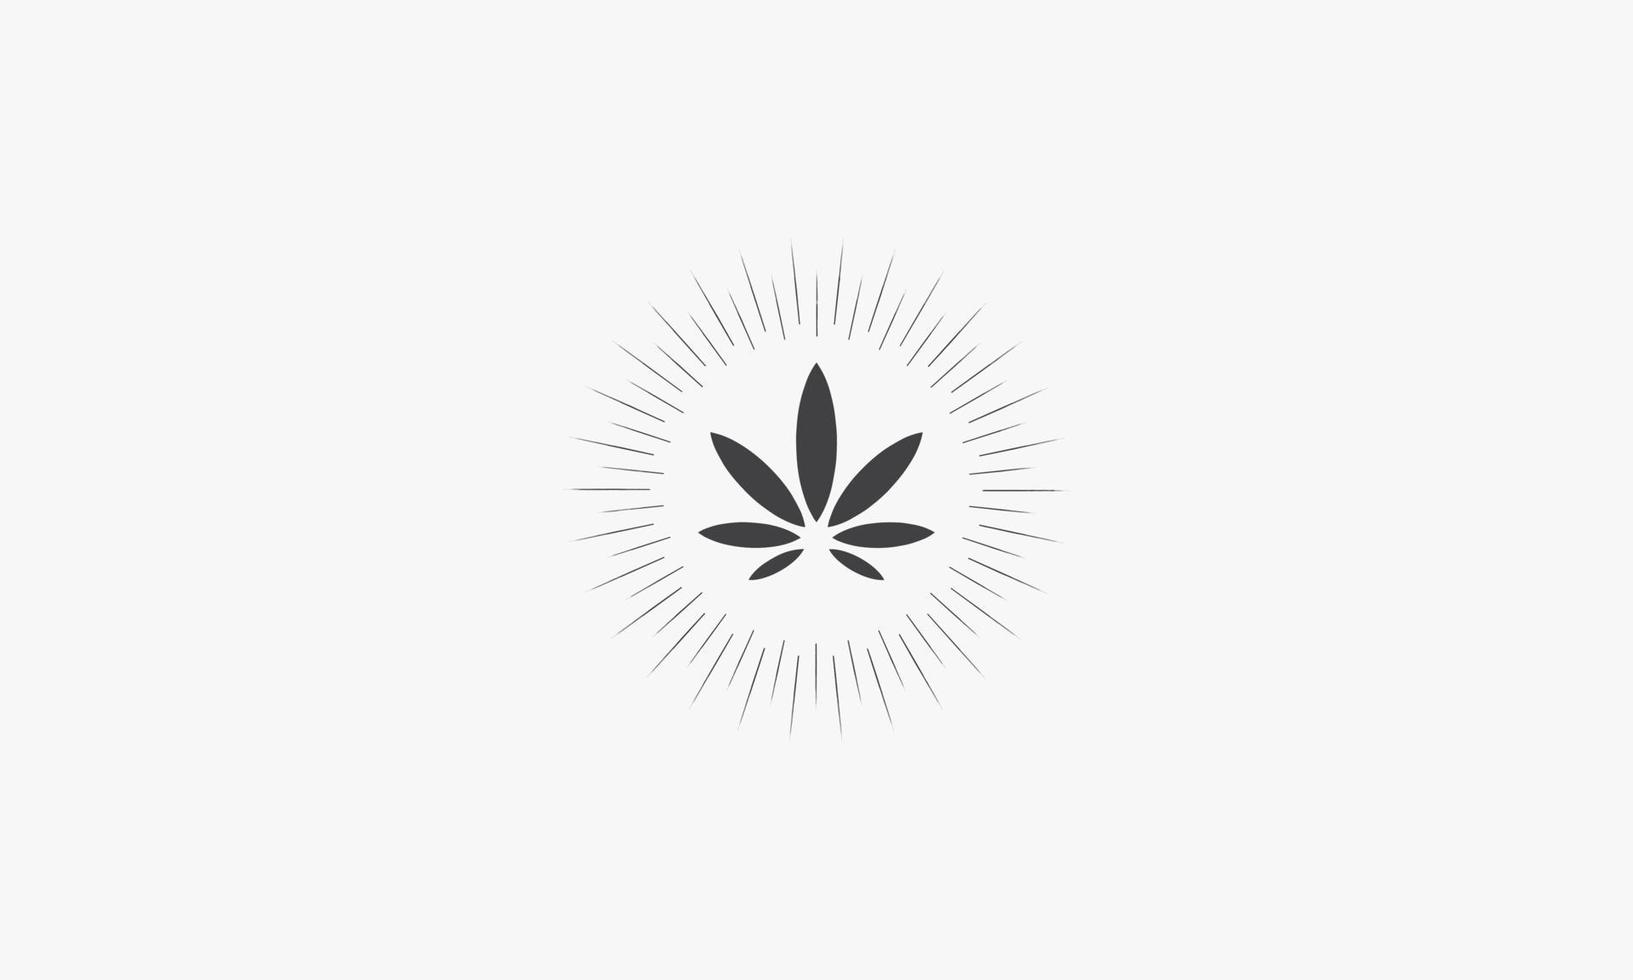 rayons cannabis vector illustration sur fond blanc. icône créative.